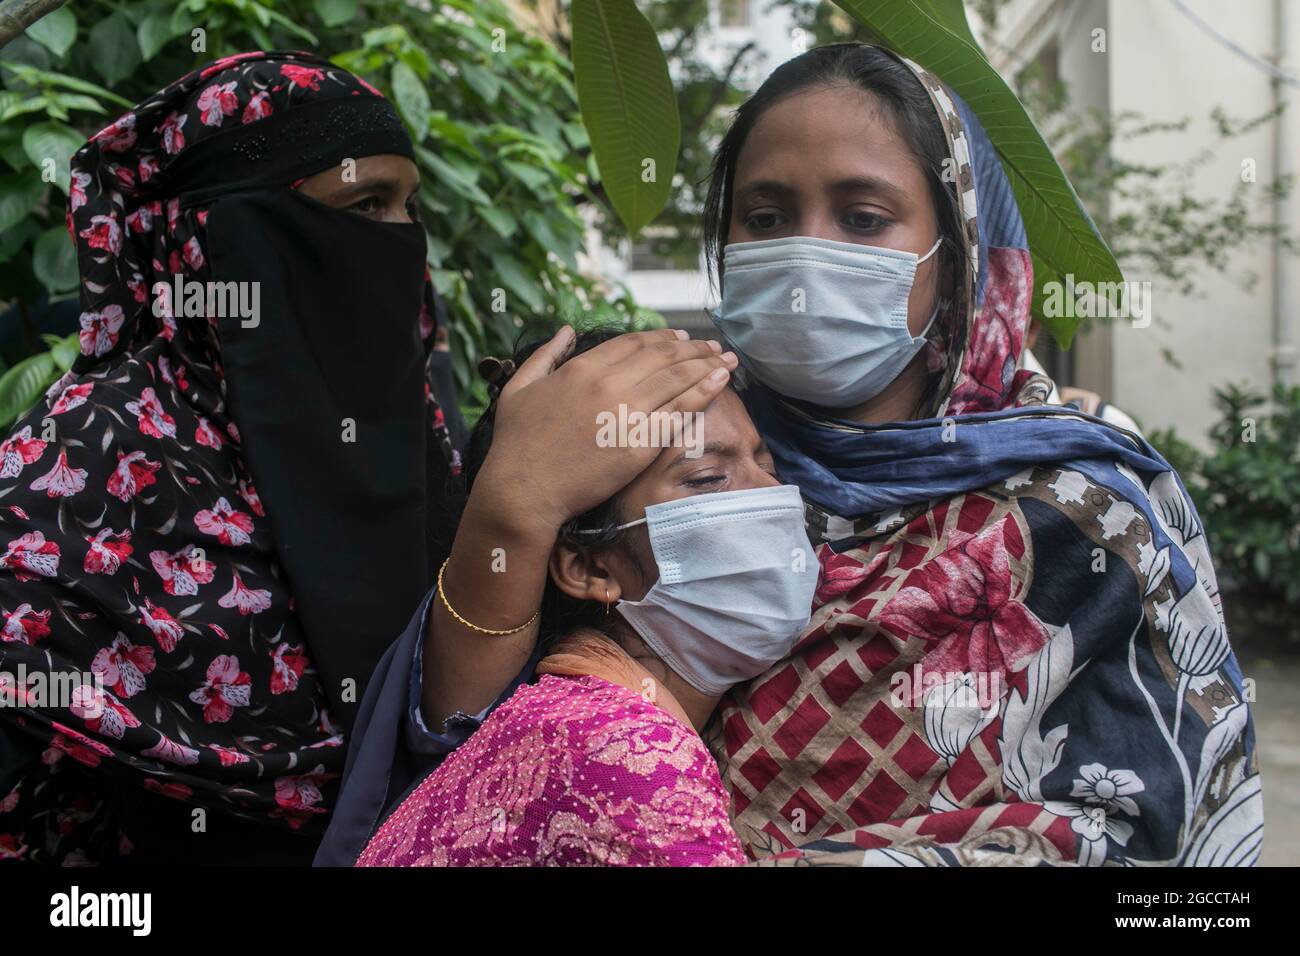 DHAKA, BANGLADESCH - 4. AUGUST: Eine Frau beklagt sich vor dem Krankenhaus des Dhaka Medical College, nachdem sie die Leiche ihrer Verwandten erhalten hat, die bei einem Feuer in der Fabrik von Hashem Foods in Narayanganjs Rupganj, außerhalb von Dhaka, ihr Leben verloren haben. Am 4 2021. August, Dhaka, Bangladesch. Kredit: Sazzad Hossain/Eyepix Gruppe/Der Fotozugang Stockfoto